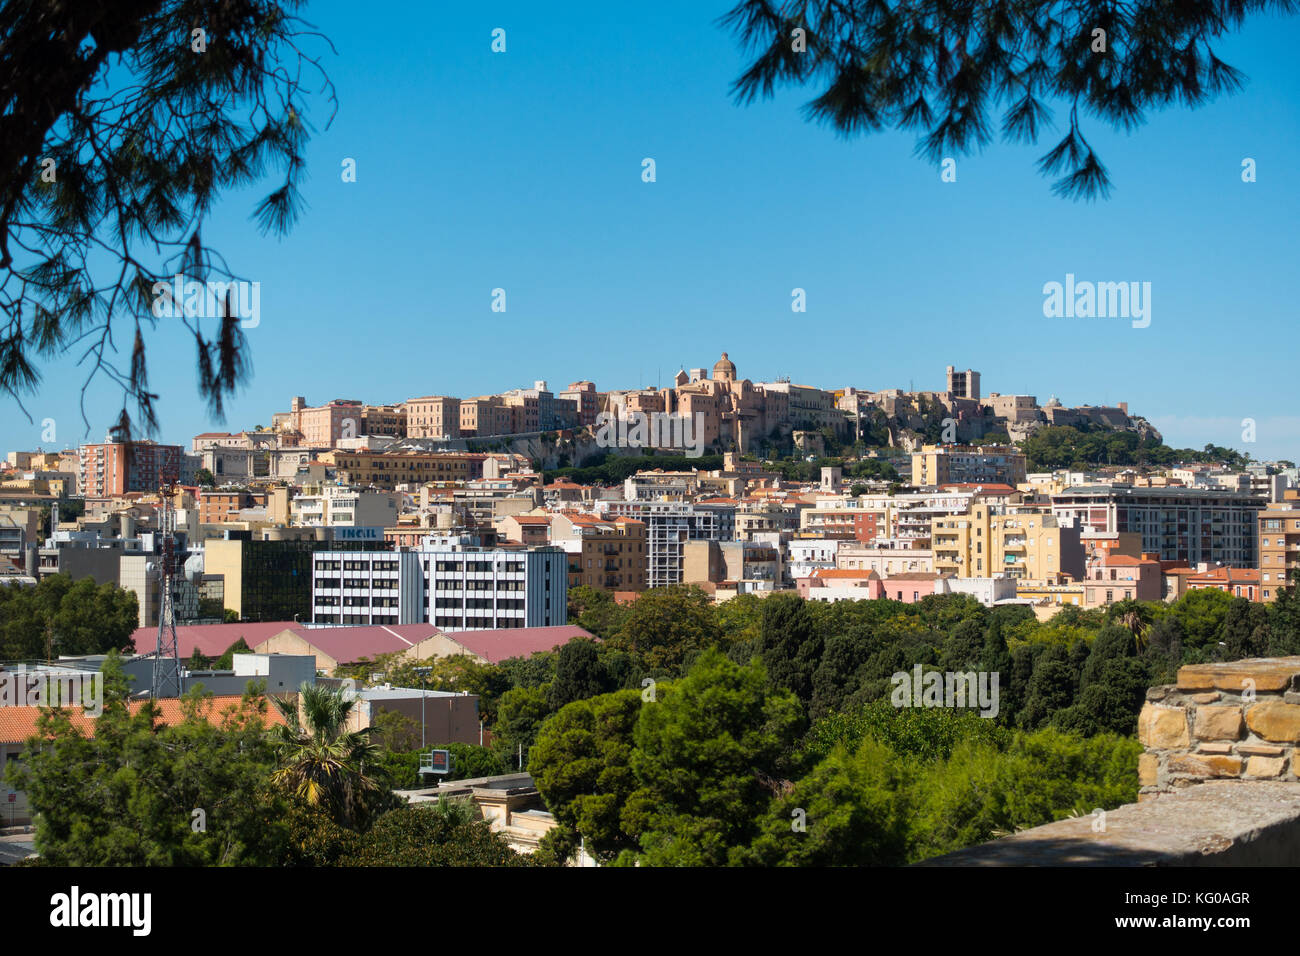 Blick auf die Altstadt und Zitadelle von Cagliari mit Blick auf die moderne Stadt, Sardinien, Italien Stockfoto